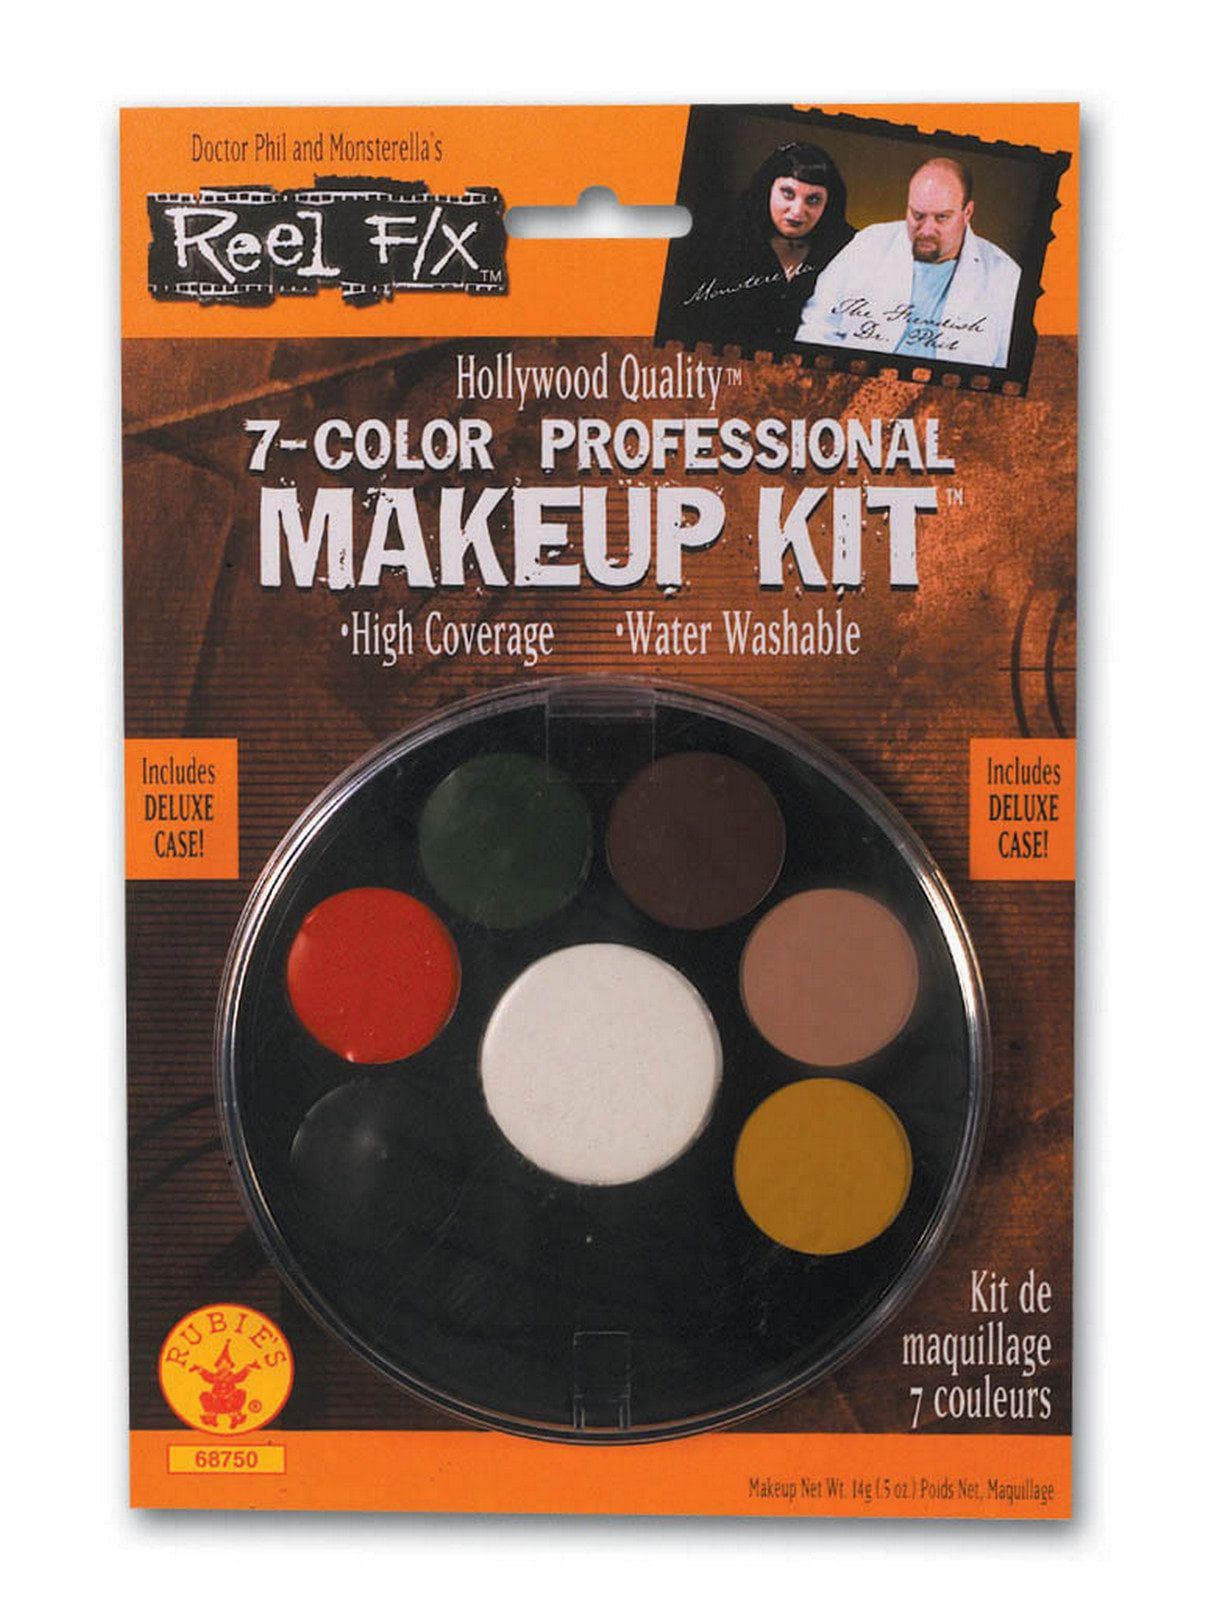 Reel F/X 7 Color Makeup Palette - costumes.com